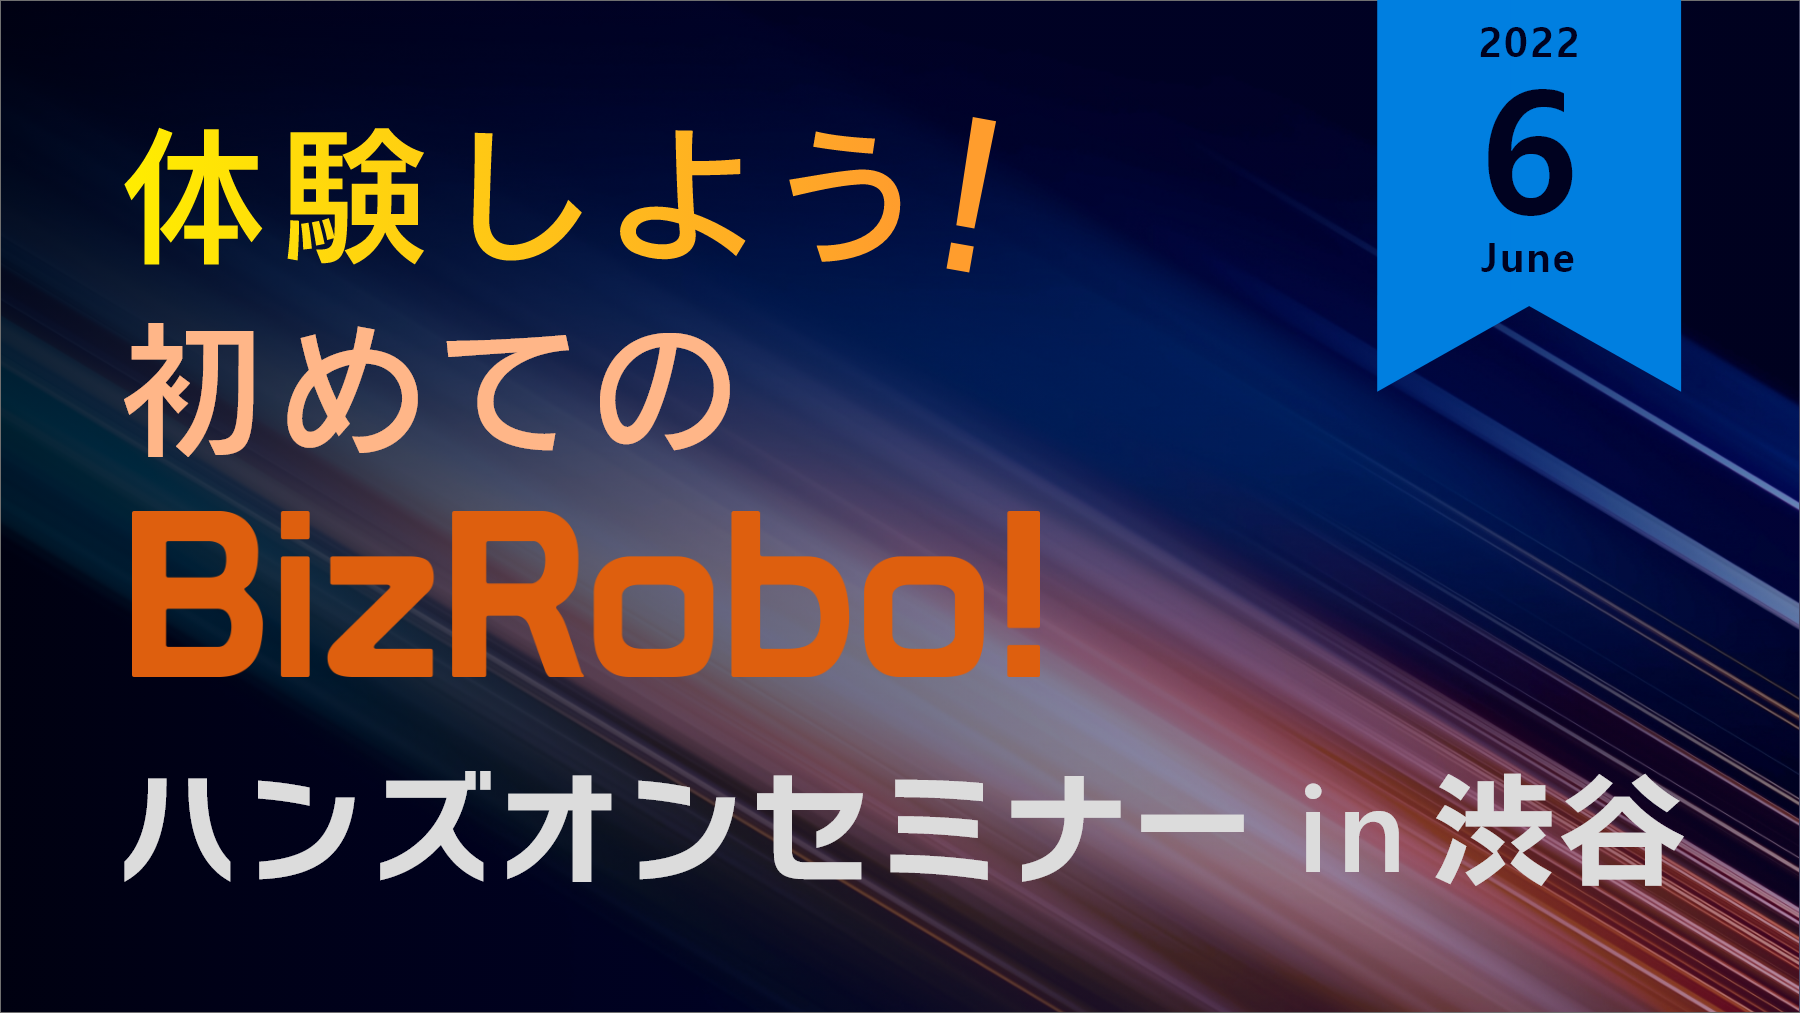 体験しよう！初めてのBizRobo! ハンズオンセミナー in 渋谷【6月】
